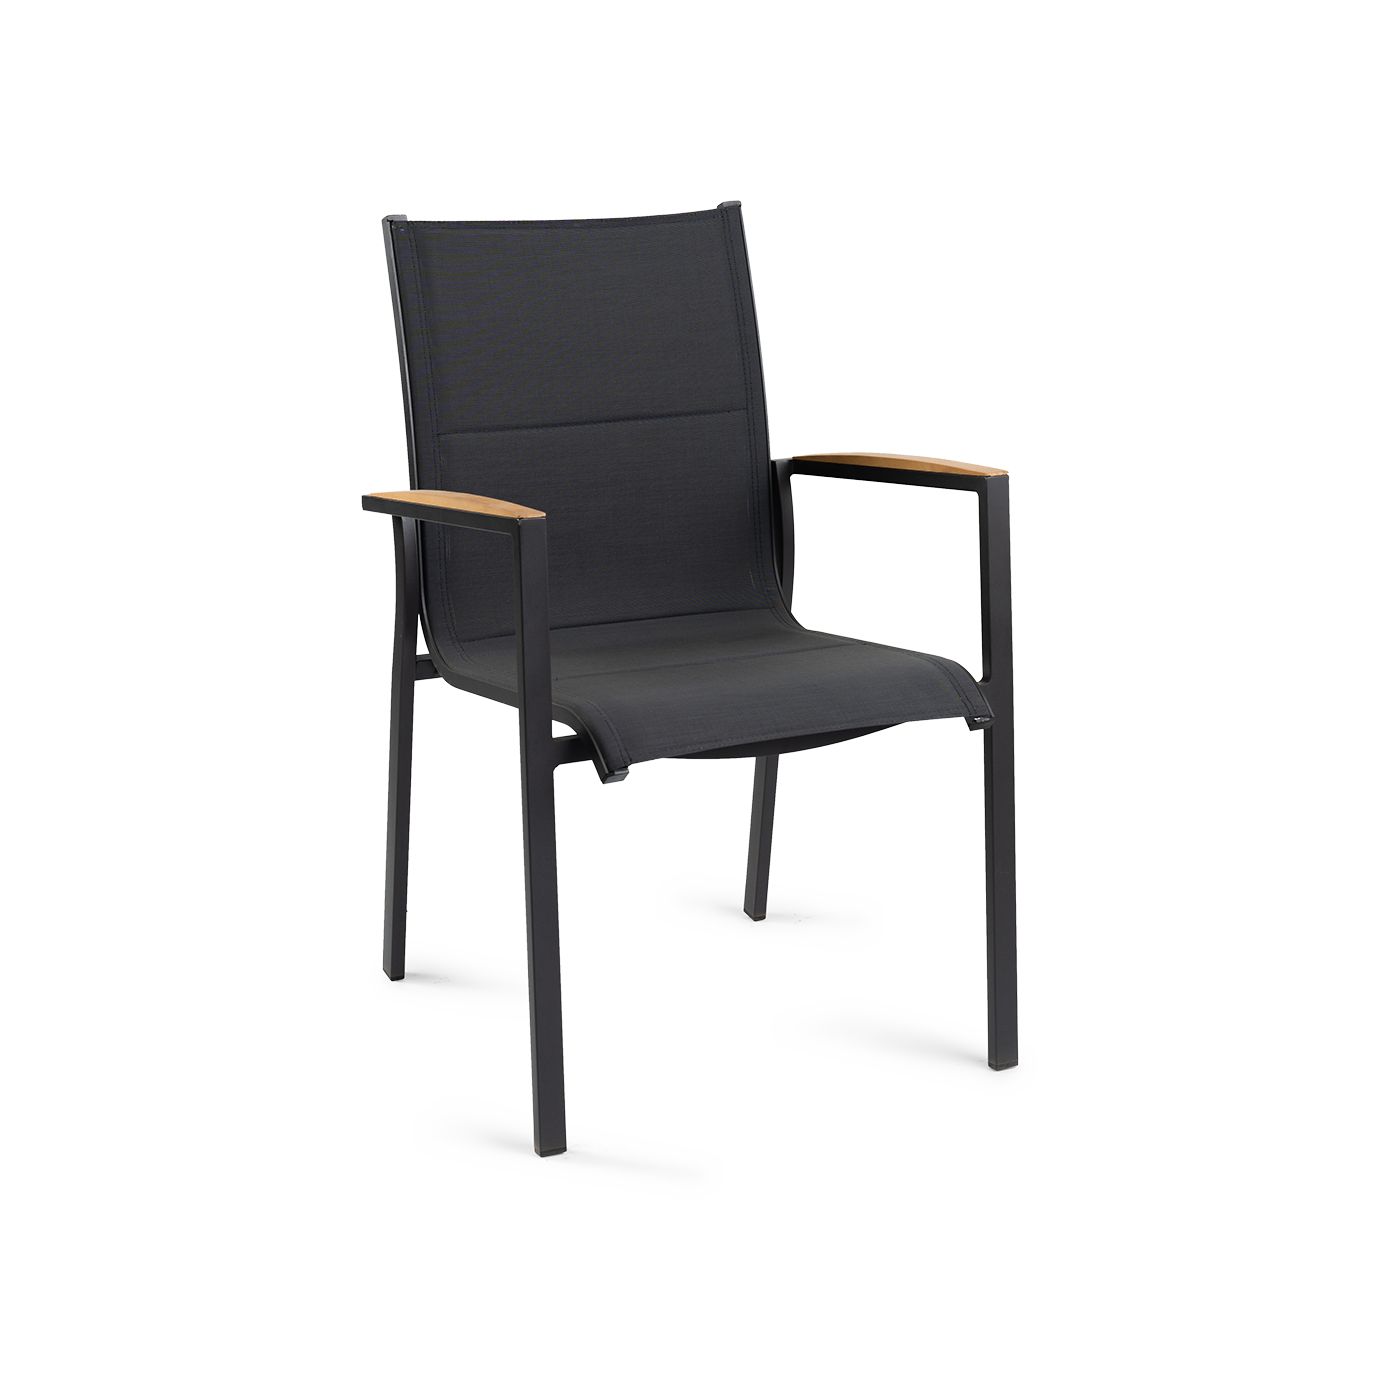 Foxx Teak Stackable Chair Charcoal